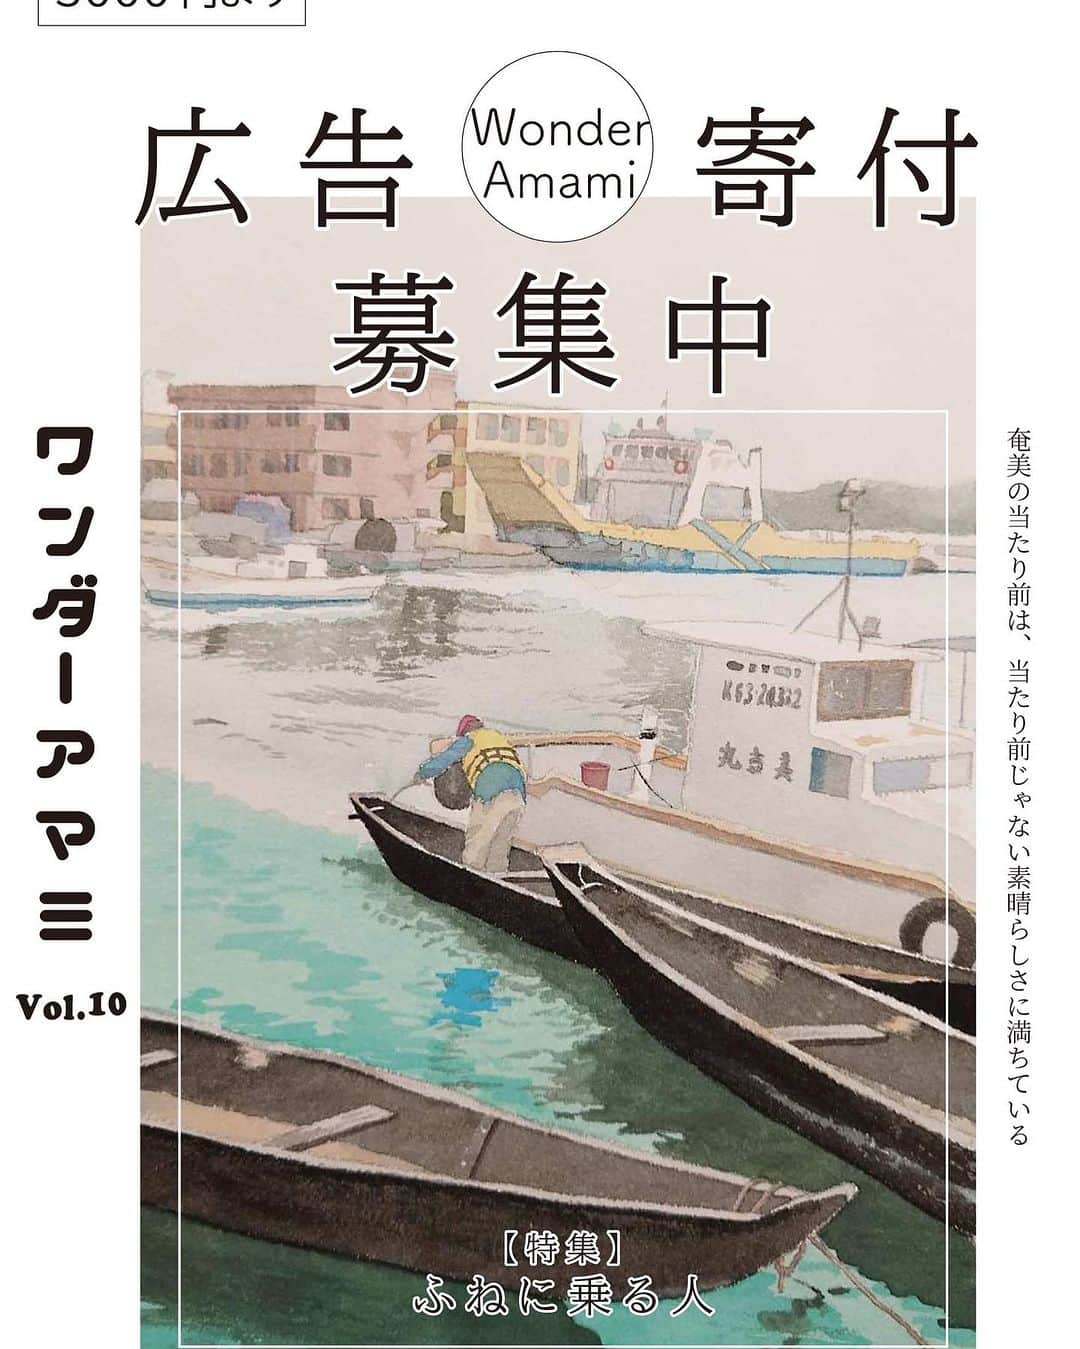 三谷晶子のインスタグラム：「鋭意製作中の Wonder Amami　ワンダーアマミVol.10。 引き続き広告募集してます！ 今回は島暮らしに欠かせない船の特集。 物流と交通を担うフェリーのあるある話から、誰もが熱く燃える舟漕ぎ大会について、シブネ、イタツケ、サバニ、アイノコ（船の種類の名前）、ヨットの話など、ワンダーアマミらしい『島の歴史と暮らしと共にある船特集』になっていると思います⛴⛵️🚣🛥🚢🚤  港湾、物流、船会社、漁業、舟漕ぎ関連の皆さま、よかったら船特集で御社のアピールいかがですか？  個人での10号達成おめでとうメッセージももちろんアリ❤️  ぜひご検討してみてくださいませ！  【ワンダーアマミVol.10おめでとう広告募集中】  現在、ワンダーアマミVol.10を制作中です。今回で記念すべき10冊目ということで、おめでとう広告を募集します！  おめでとうメッセージ、お店の宣伝など内容は自由です。 何卒よろしくお願いします！  ●概要 ワンダーアマミは、奄美大島を中心とした唯一の環境文化型フリーペーパーです。「奄美の当たり前は、当たり前じゃない素晴らしさに満ちている」をテーマに、奄美の歴史や自然、人や商店の情報発信はもちろん、観光客が奄美を理解するための文化誌として、地域活性に貢献しています。半年に一度2,000部を配布し、島内全域の50店舗以上に設置しています。  ●広告料金 表3 1枠 カラー横6センチ×縦3センチ 3,000円 表3 1枠大　カラー横12センチ×縦3センチ　6,000円 表４ カラーA5サイズ　30,000円  ※広告の制作も料金に含まれます。写真と文言をご提供ください。 ※広告掲載誌が出来上がったら送付いたします。送料はご負担ください。 ※50部以上を希望者の方には、印刷費を追加で対応可能です。 ※掲載内容は編集部による審査があります。 ※公序良俗に反する恐れのあるもの、政治的活動または宗教活動に関するもの、児童及び青少年の健全育成に反する恐れのあるもの、第三者の著作権や財産権、プライバシー等を侵害する恐れのあるものはお断りいたします。 ※請求書をお送りしてから1ヶ月以内にお振込ください。  ●お申し込み方法 ワンダーアマミ編集部へご連絡ください。 メールwonder.amami@gmail.com 電話 090-6112-2872（三田）」